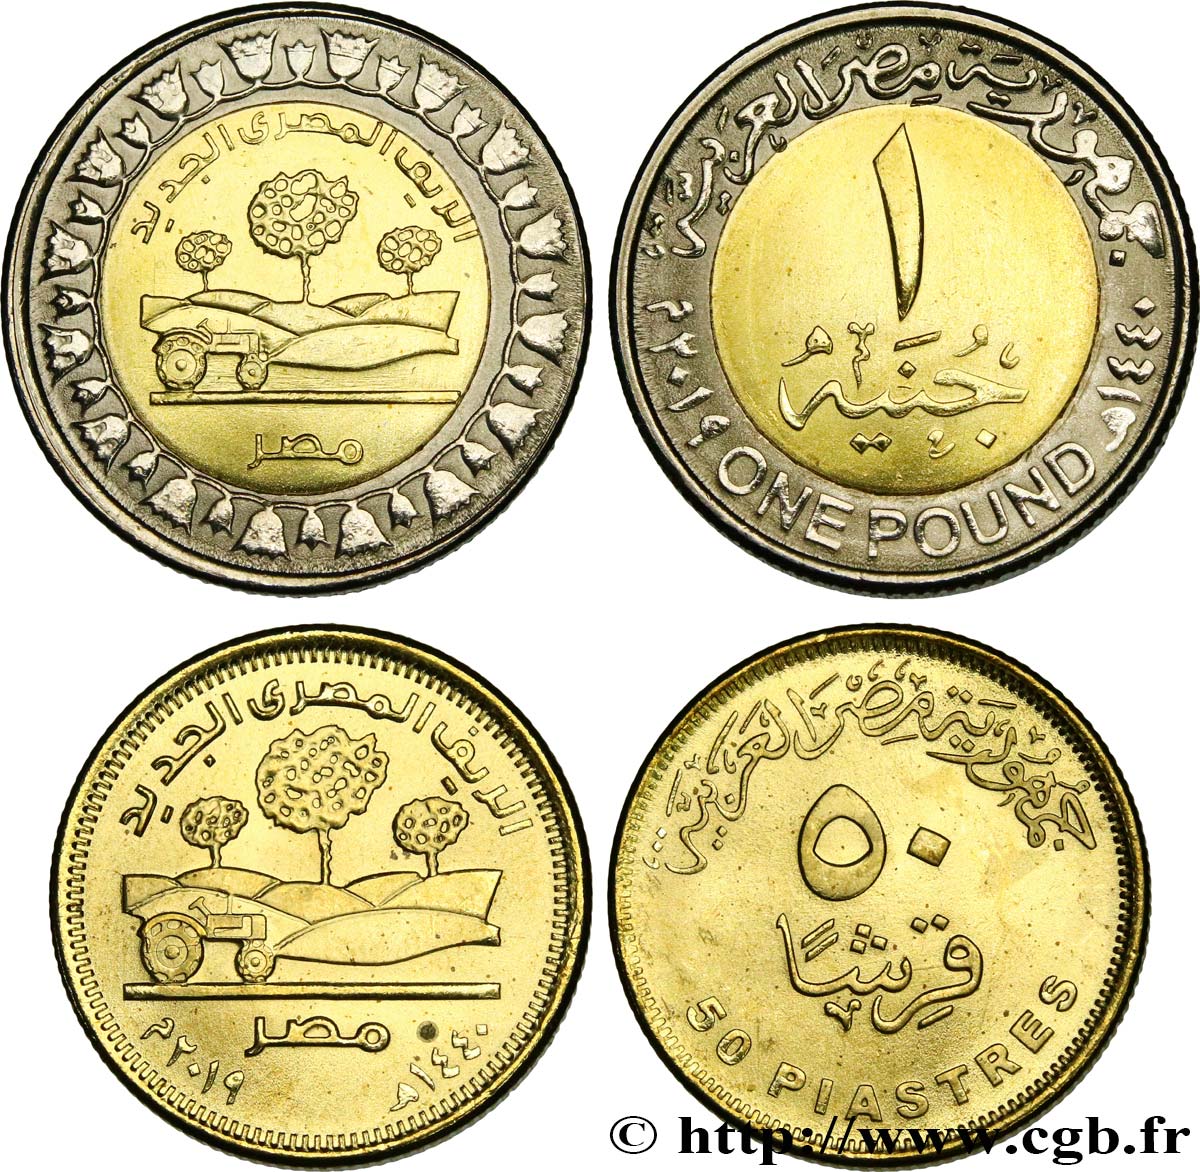 EGITTO Lot 50 Qirsh et 1 Pound (Livre) nouvelle campagne égyptienne AH 1440 2019  MS 